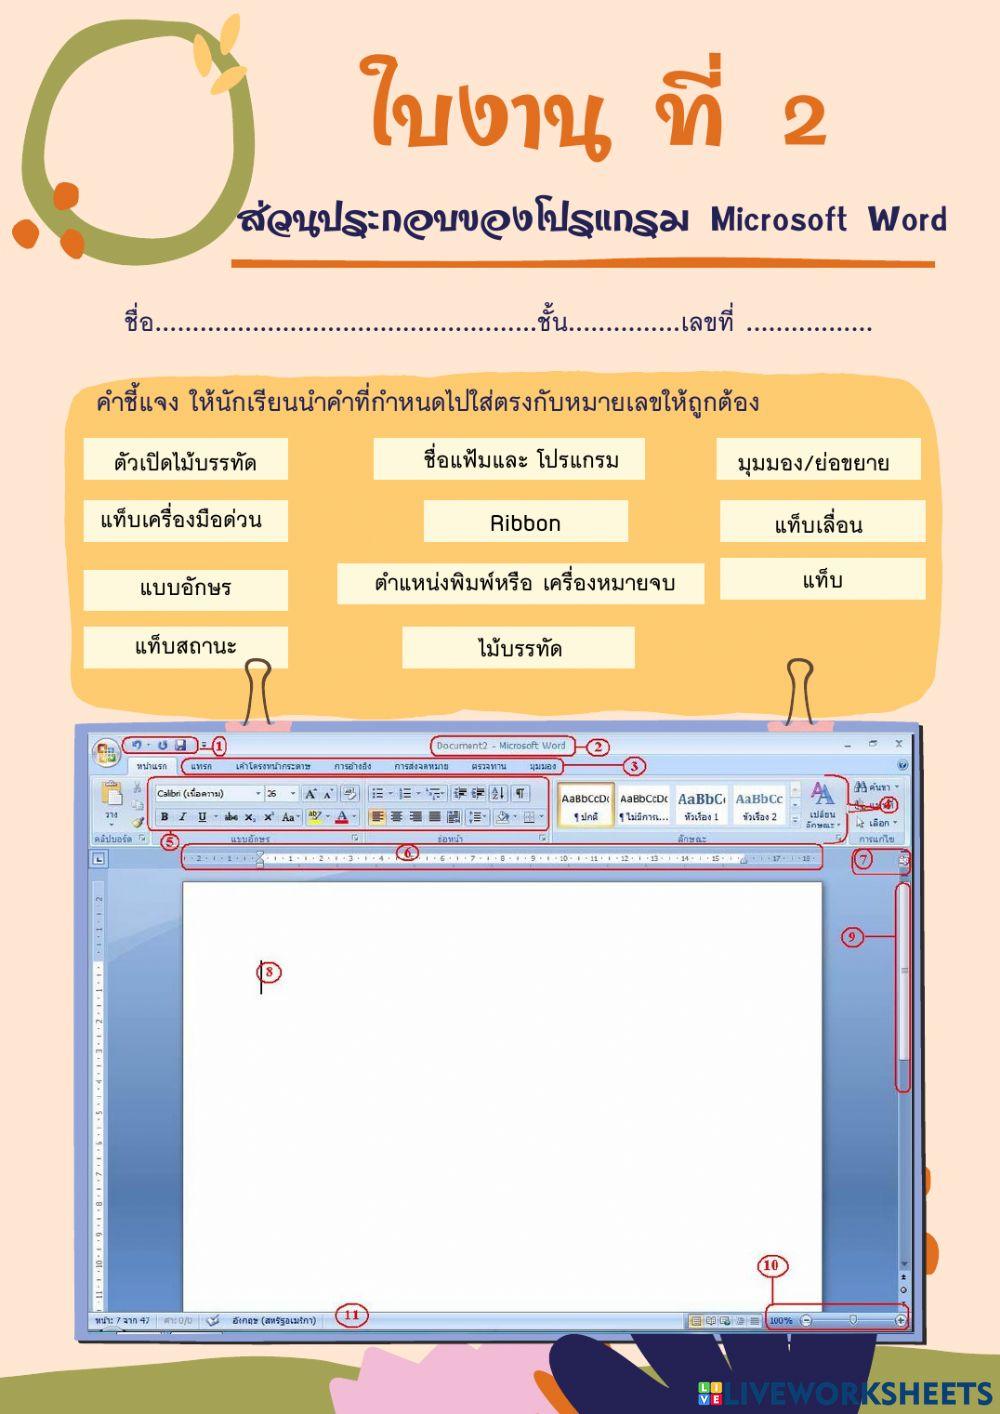 ส่วนประกอบของโปรแกรม Microsoft Word